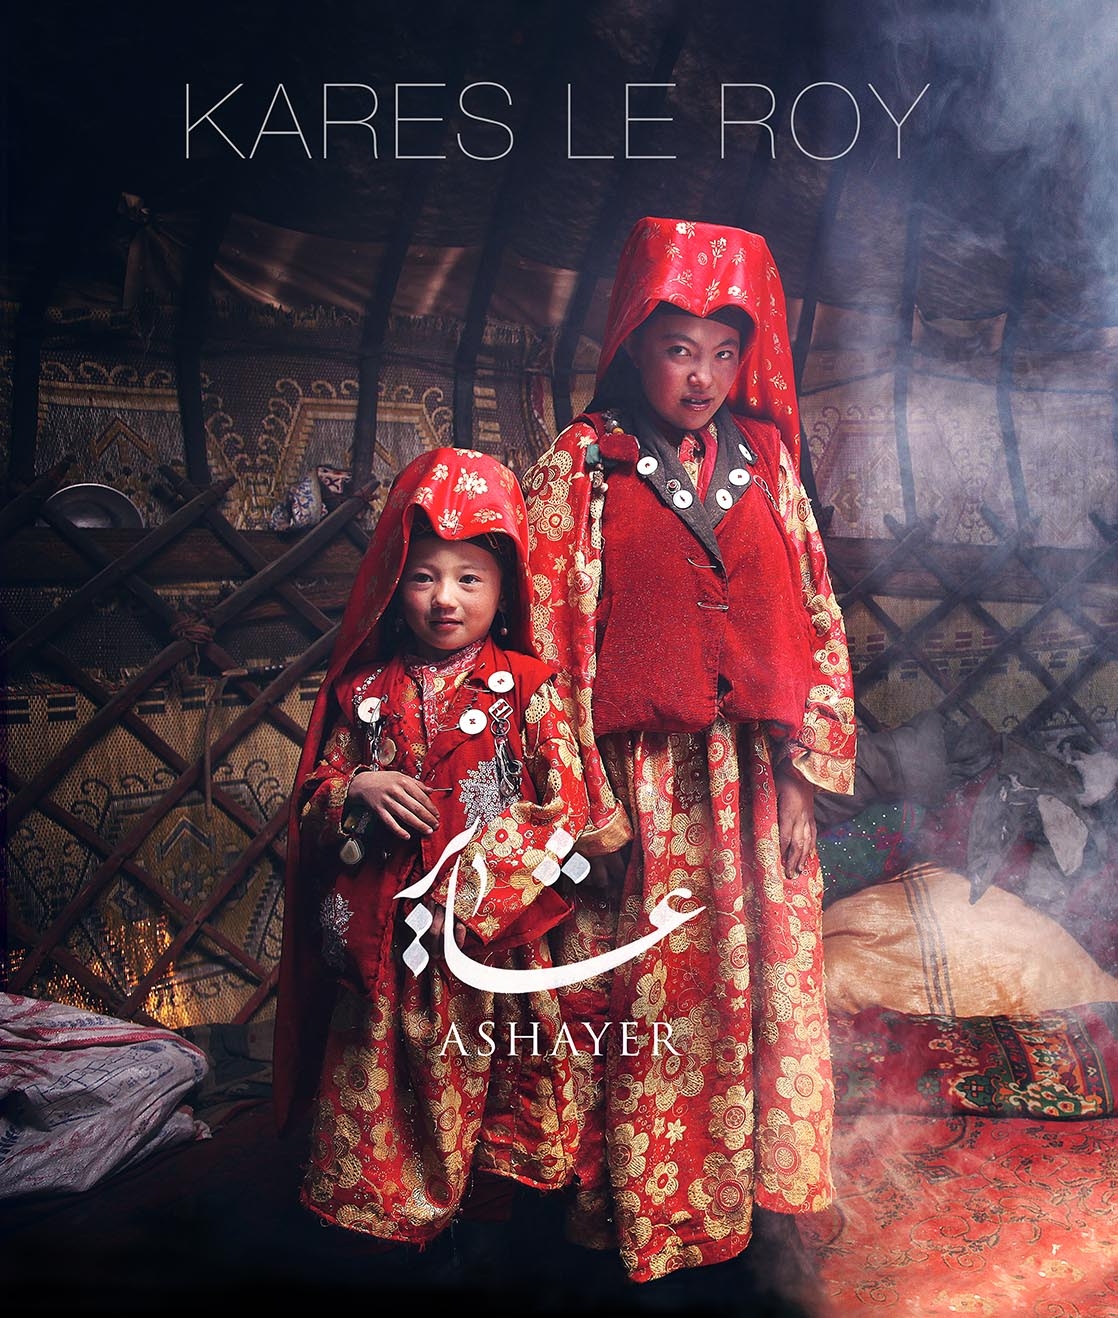 Couverture du livre Ashayer de Kares Le Roy, deux filles de la tribu des Kirghizes dans leur yourte, en tenue traditionnelle